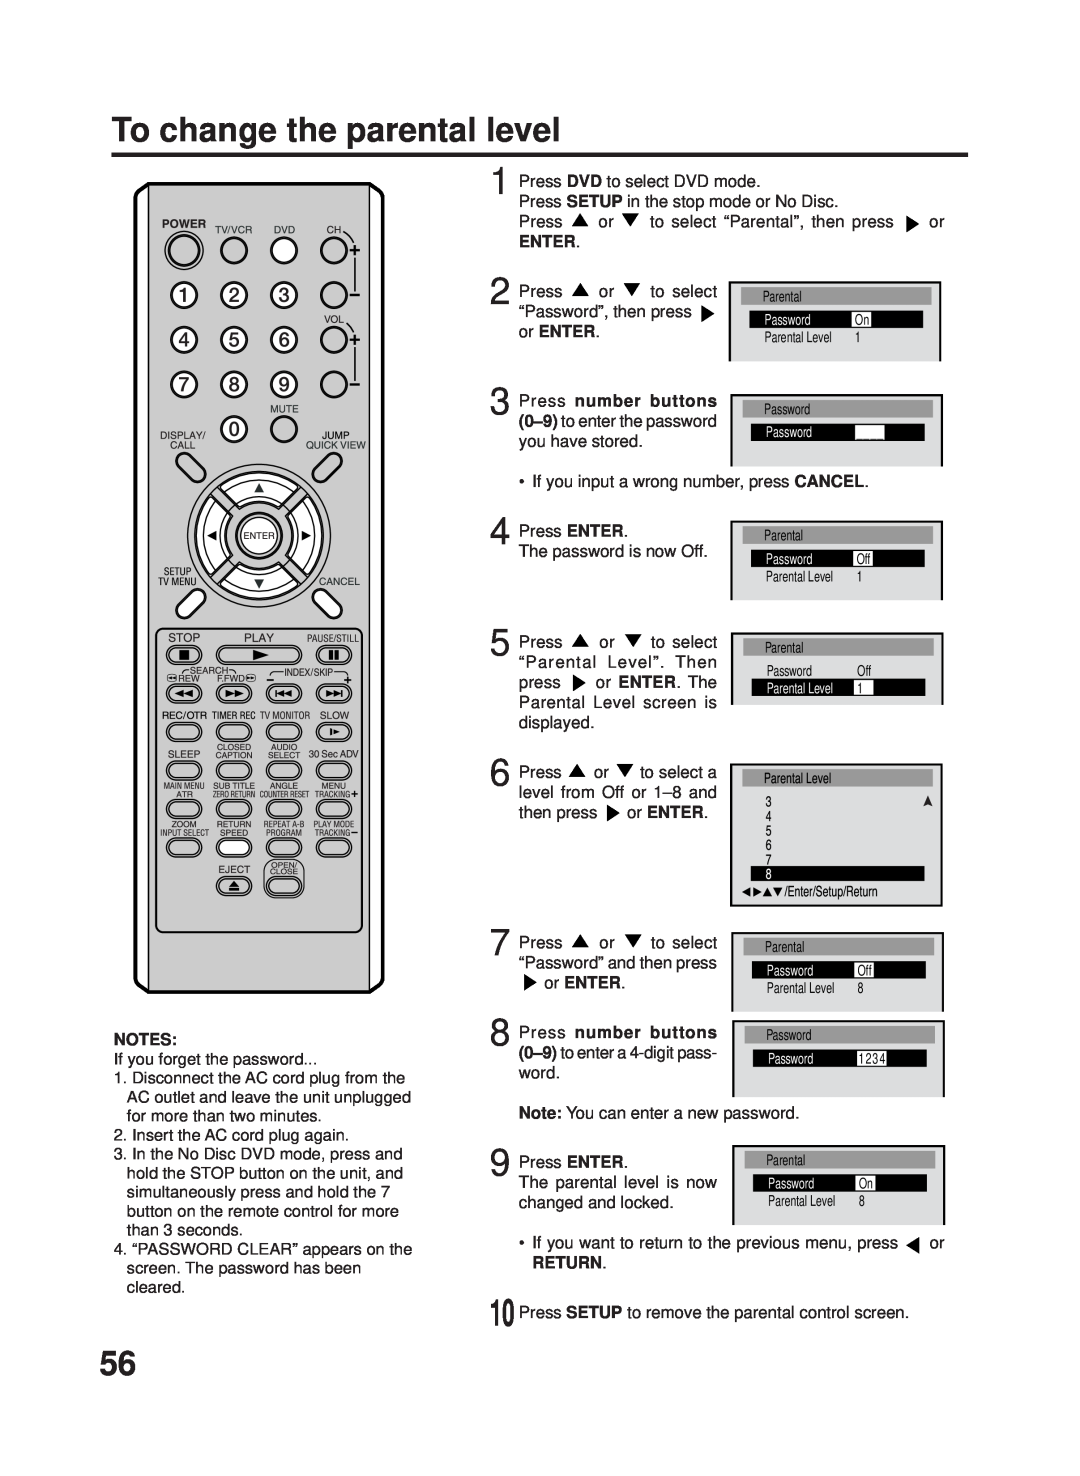 RCA 27F500TDV manual To change the parental level, Enter, or ENTER, Press number buttons, Return 